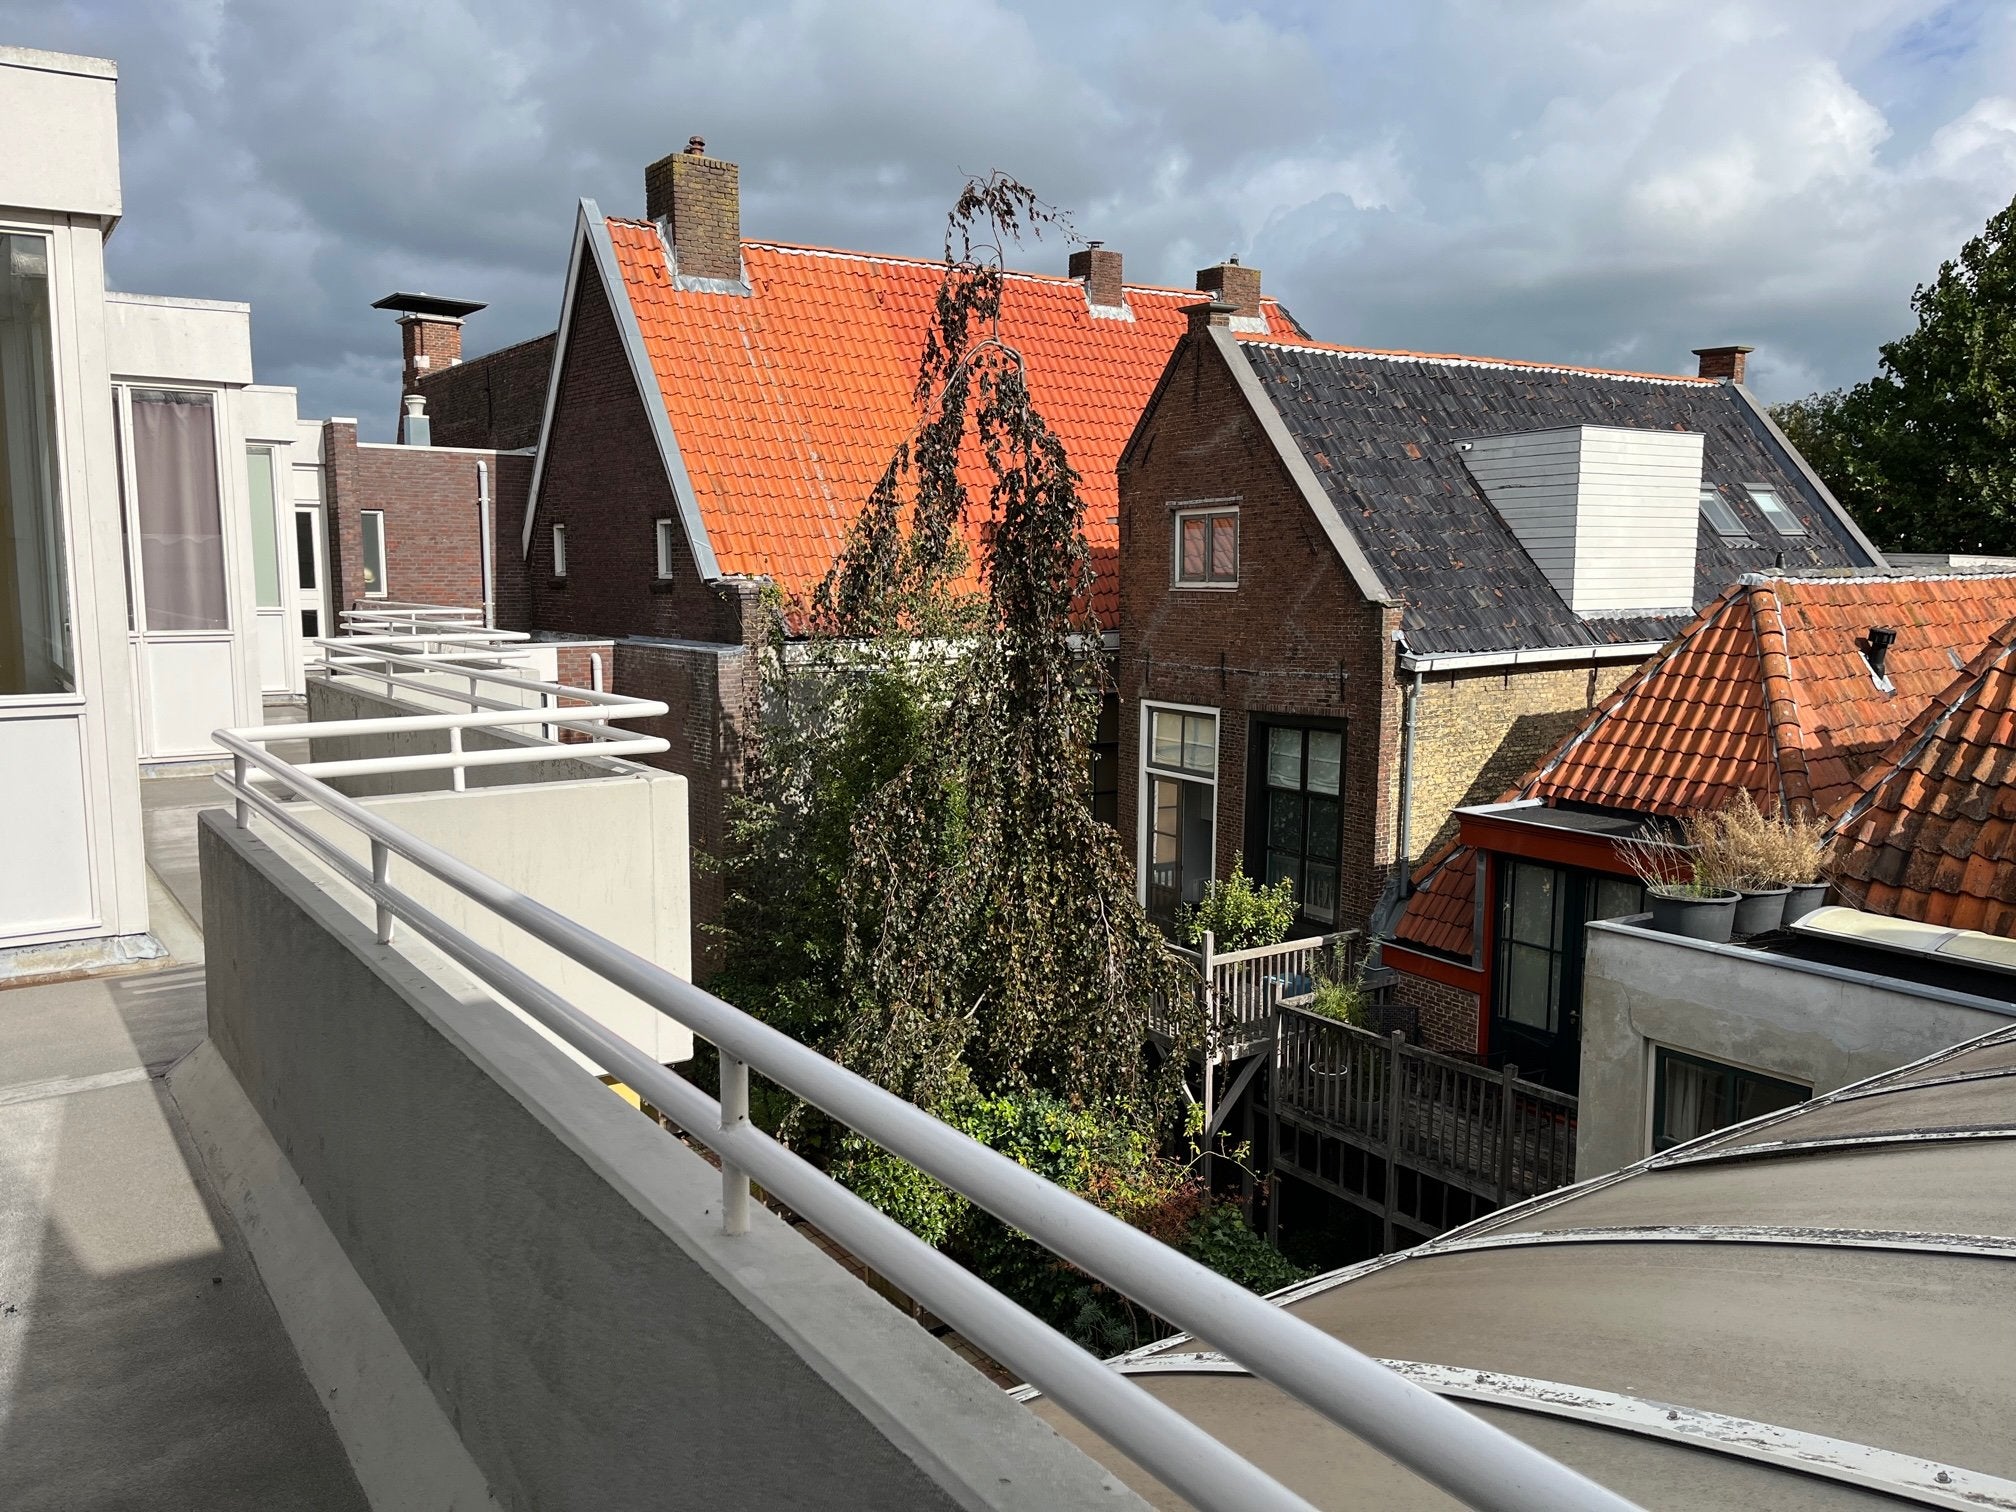 Bekijk foto 1/18 van apartment in Leeuwarden